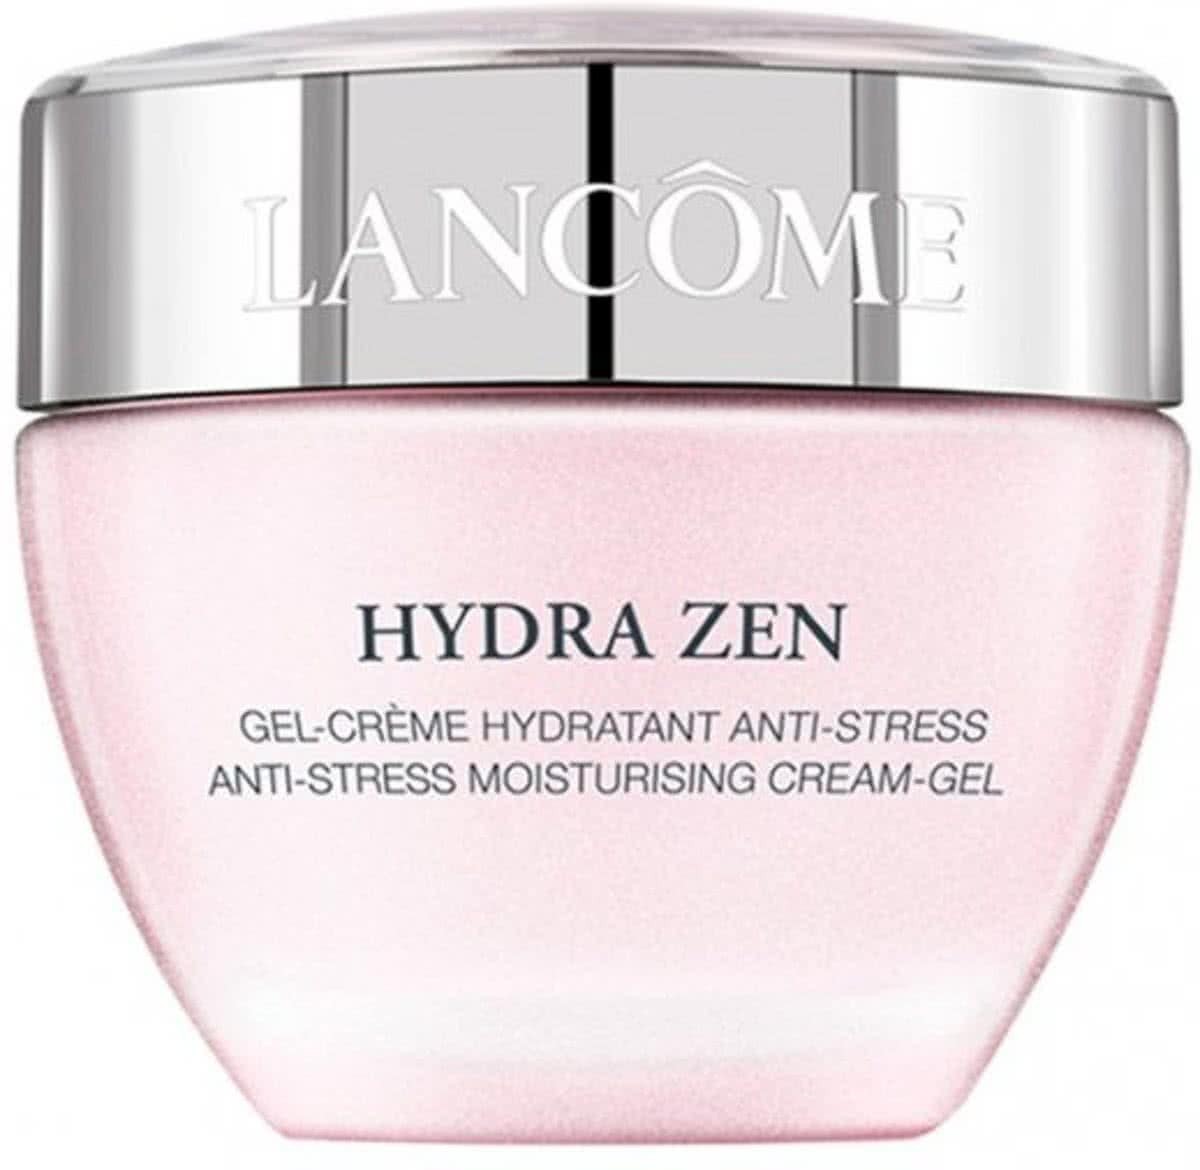 Lancôme Hydra Zen Anti-Stress Moisturising Cream-Gel Gezichtsgel 50 ml